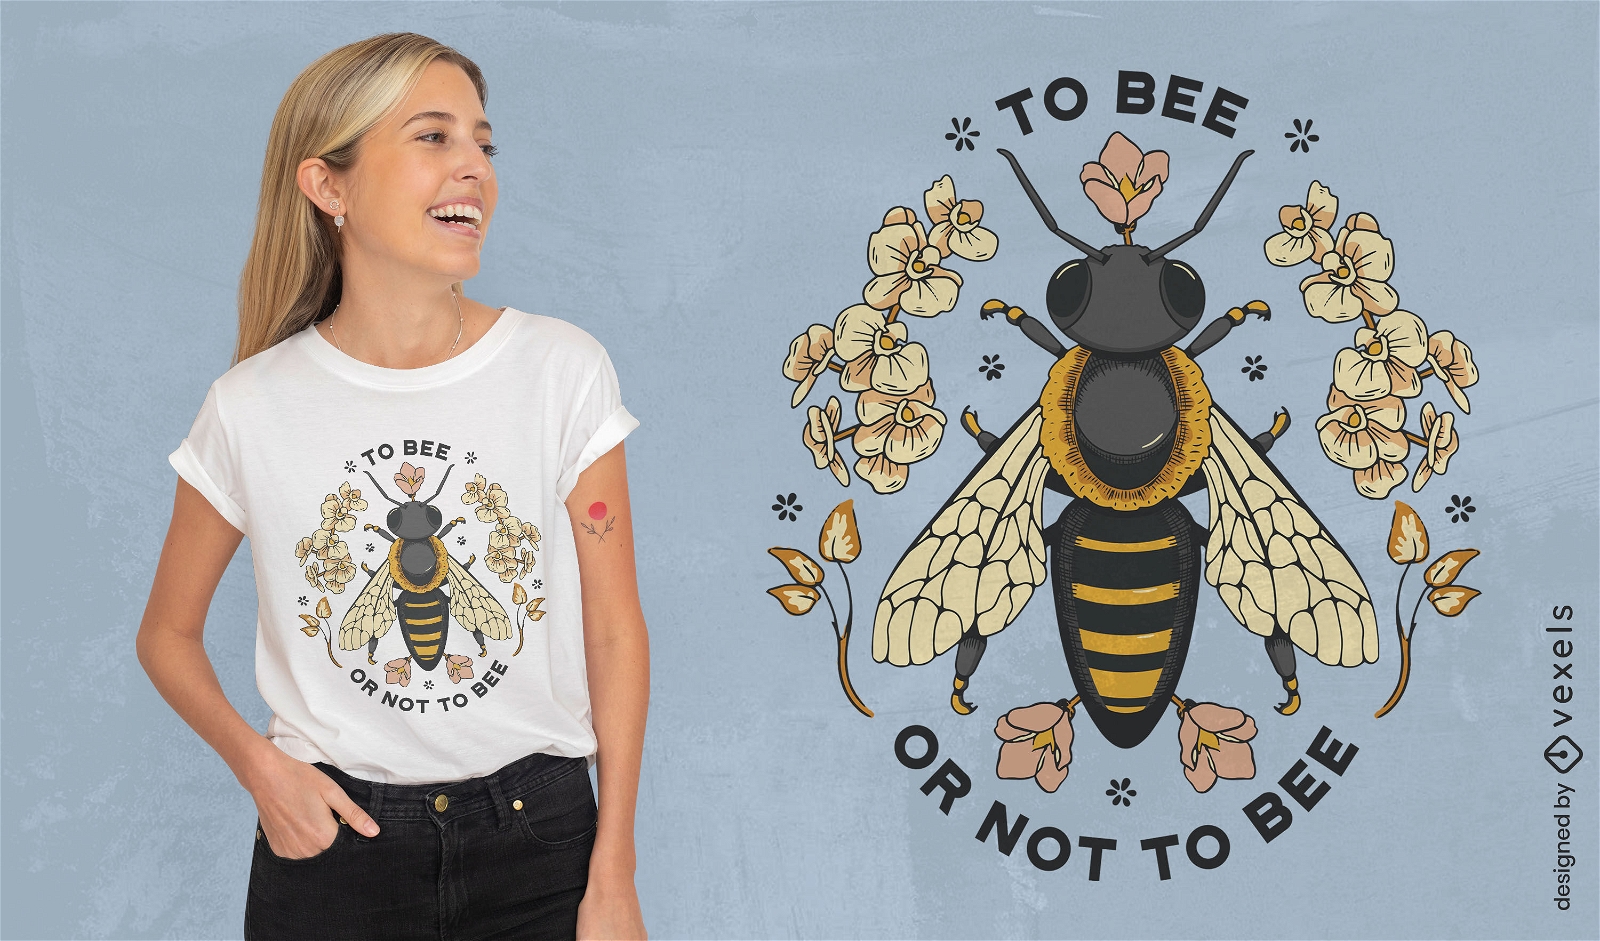 Queen bee quote t-shirt design